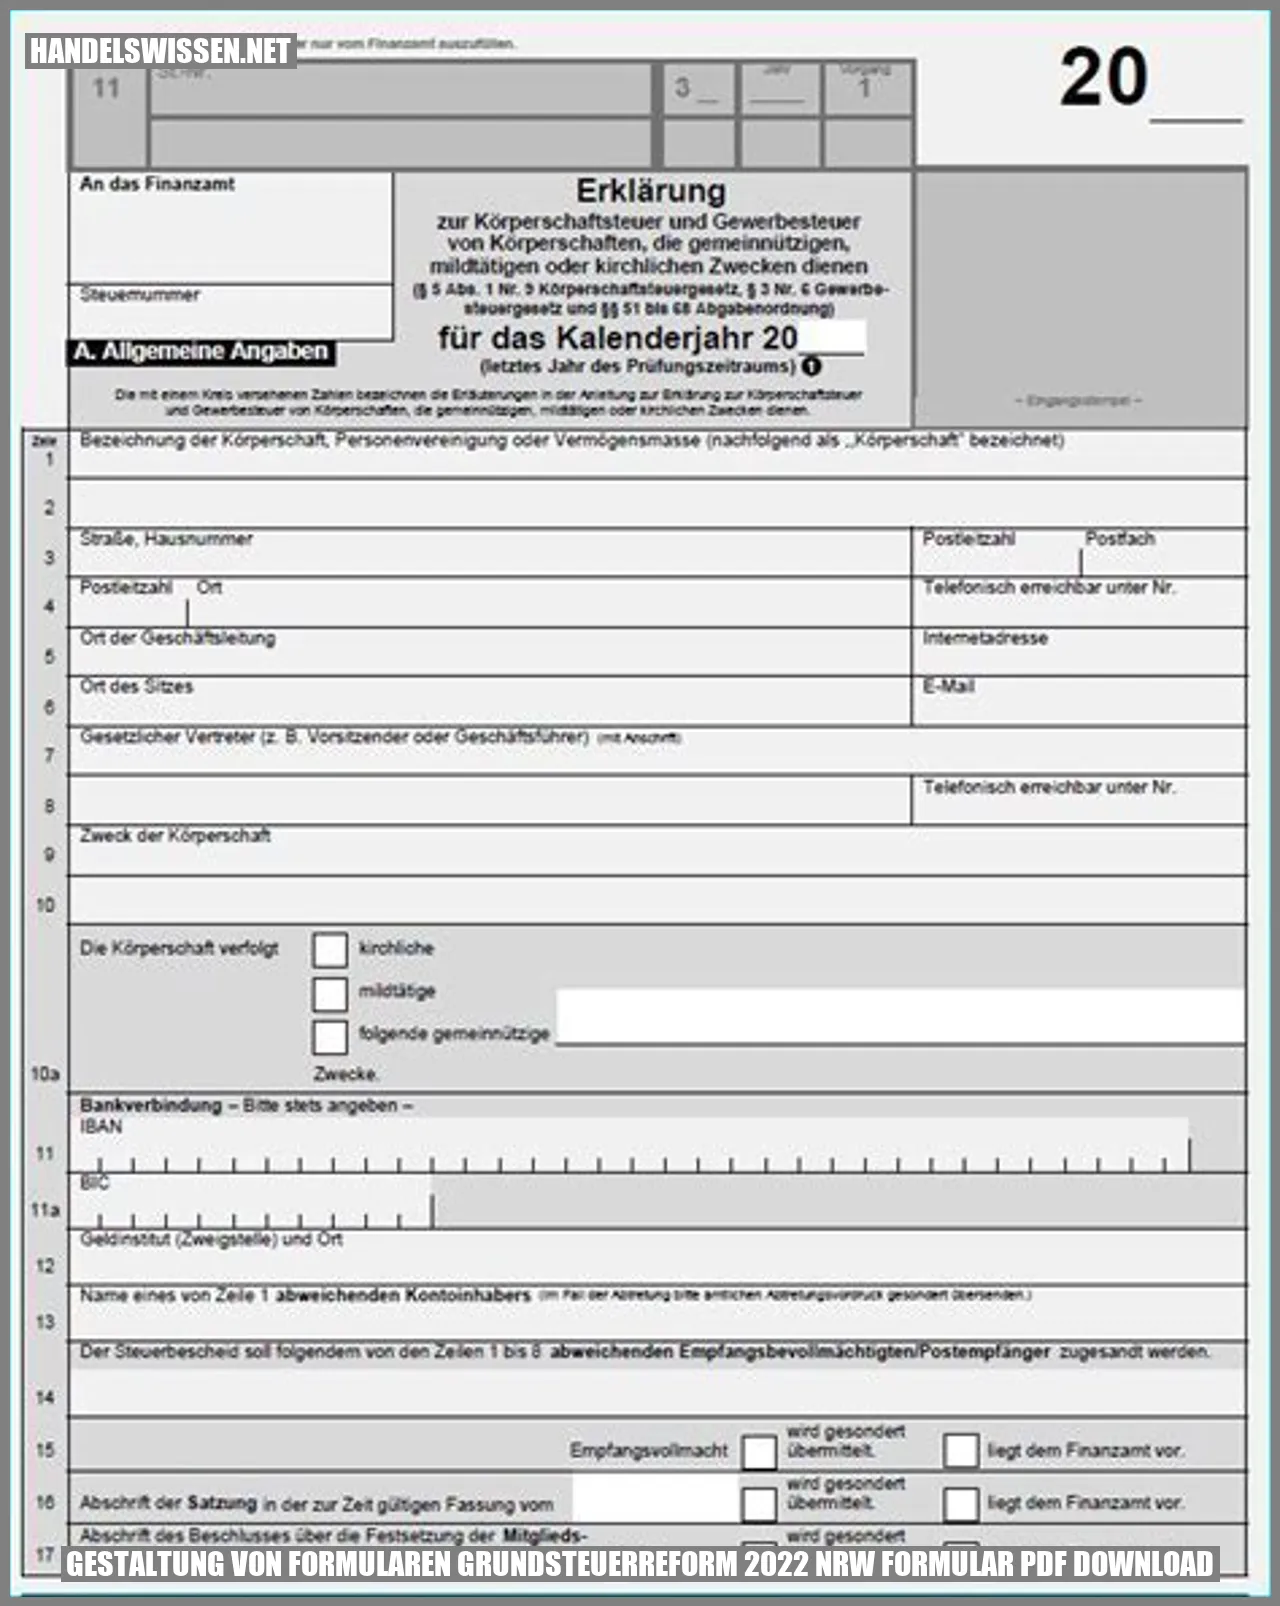 Bild zum Thema Gestaltung von Formularen grundsteuerreform 2022 nrw formular pdf download